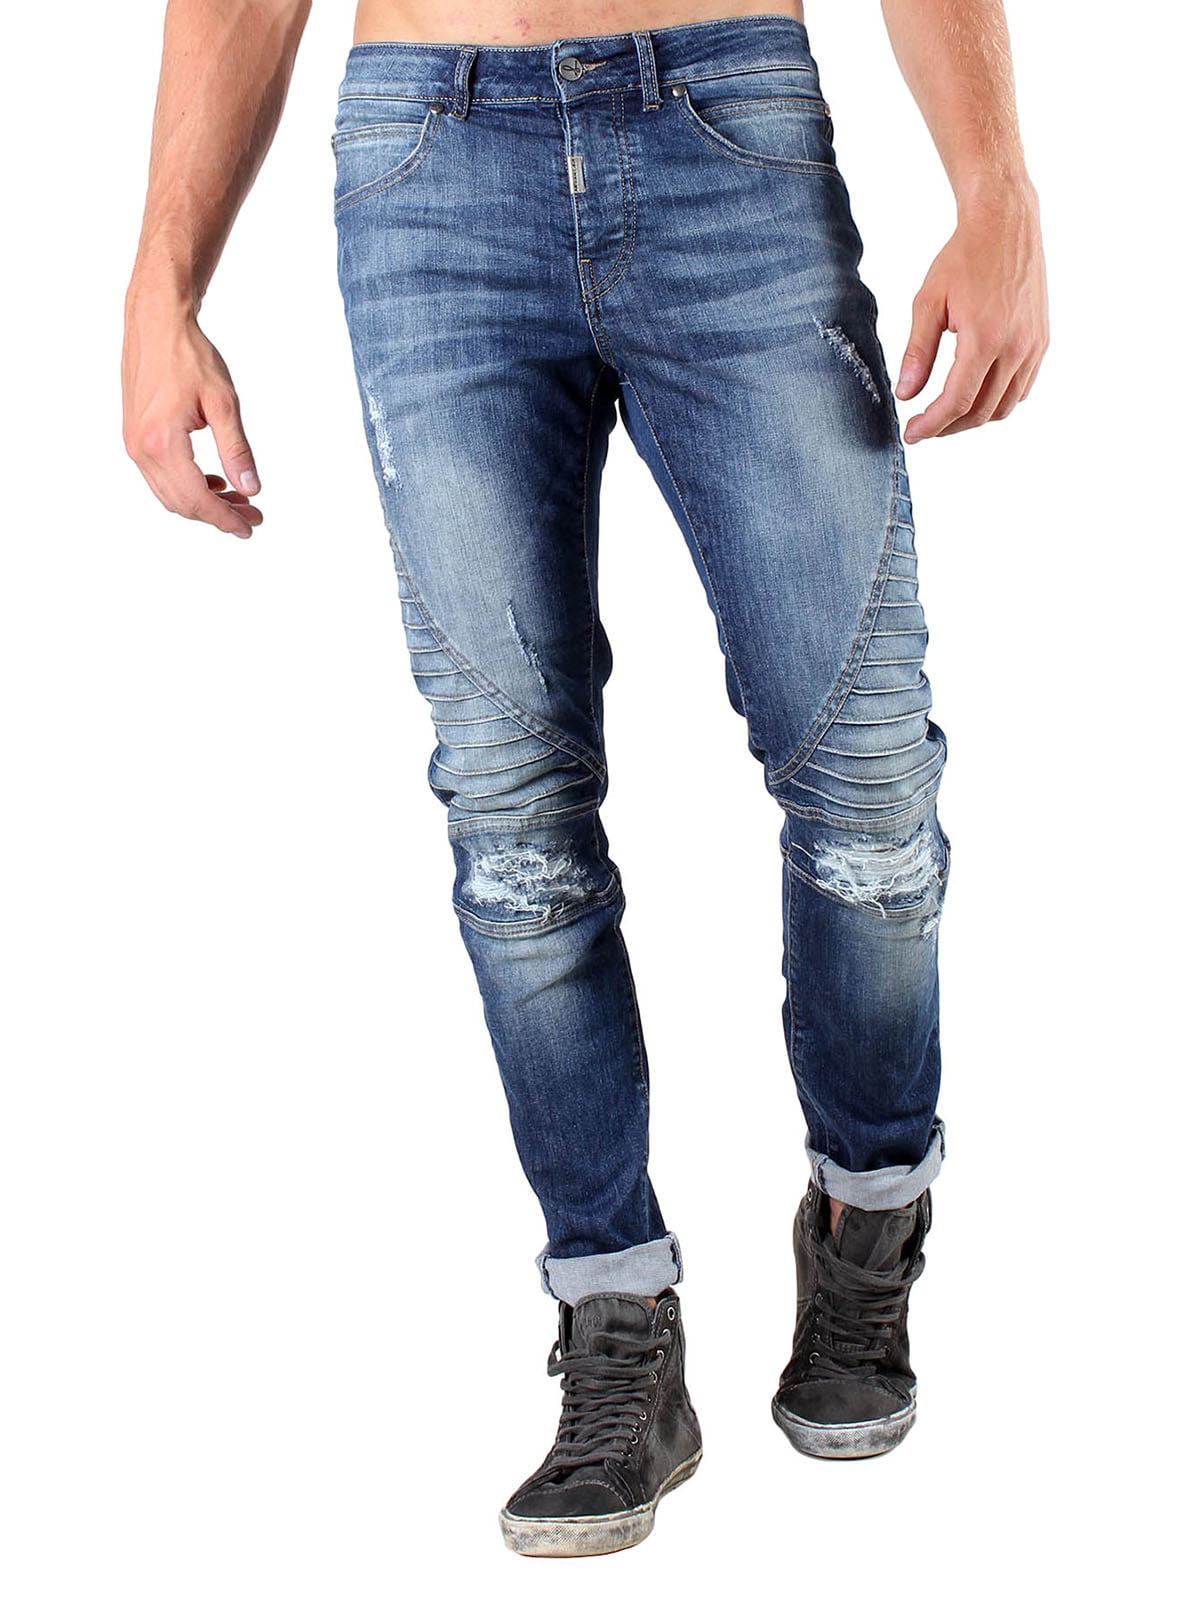 Фасоны джинсов мужских